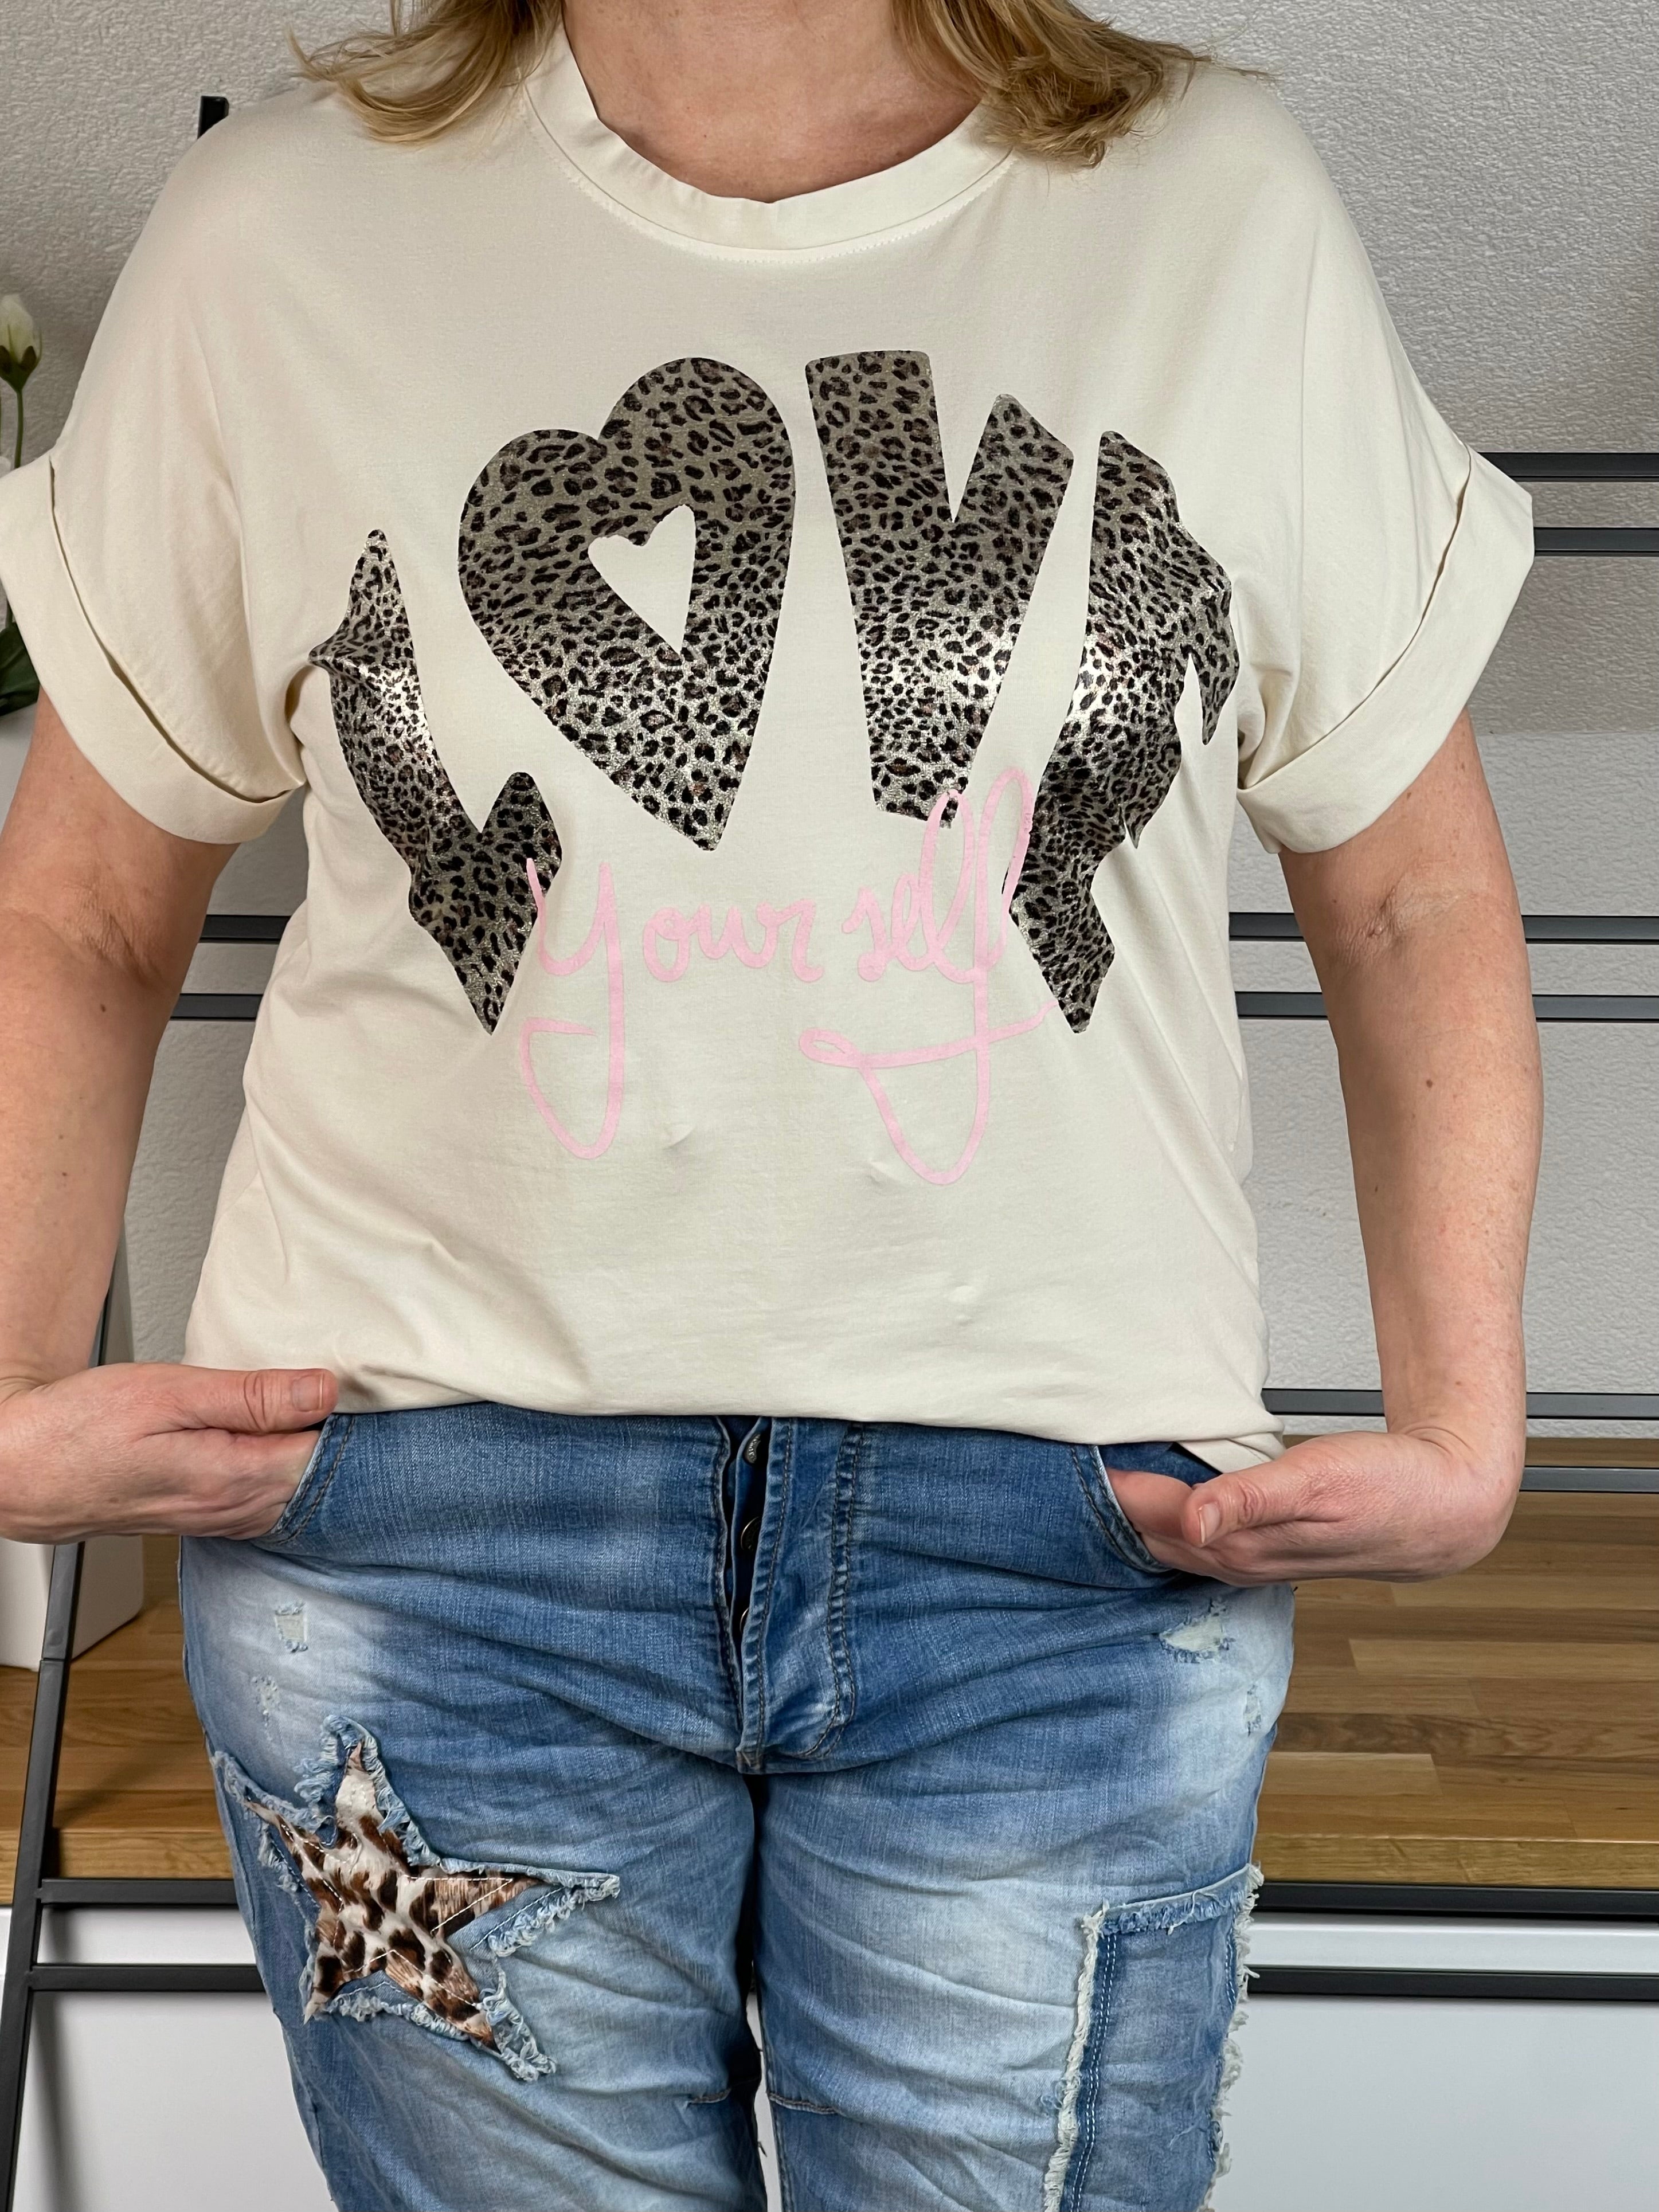 T - Shirt „Love yourself“ Einheitsgröße Gr. 38 - 42